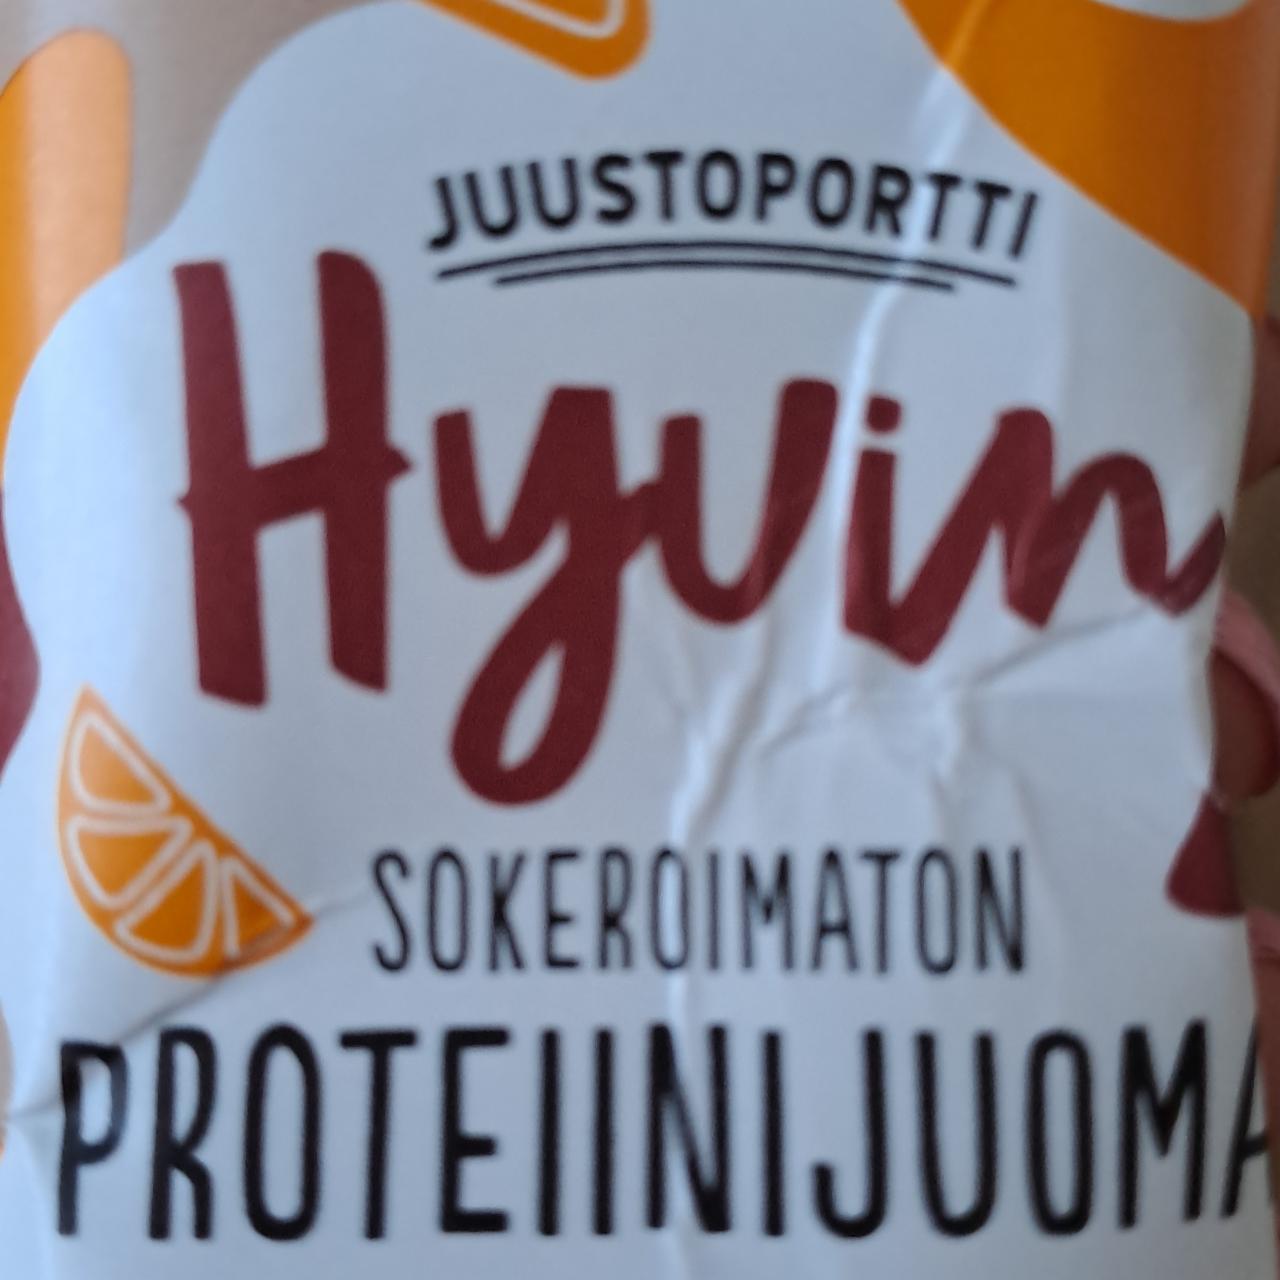 Фото - протеиновый напиток питьевой апельсин-шоколад Juustoportti